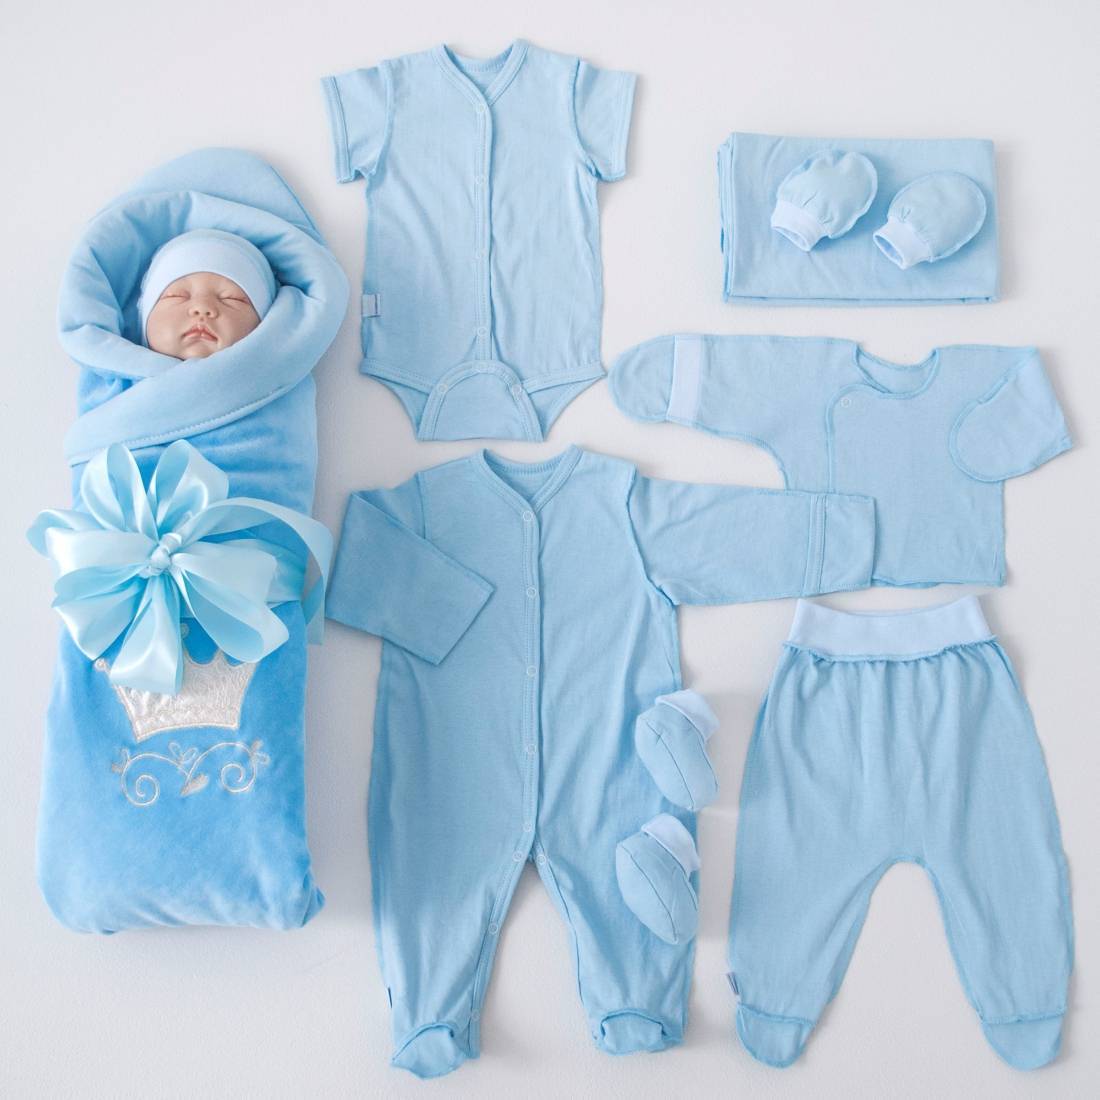 Одежда на выписку для новорожденных, в какой будет комфортно ребенку